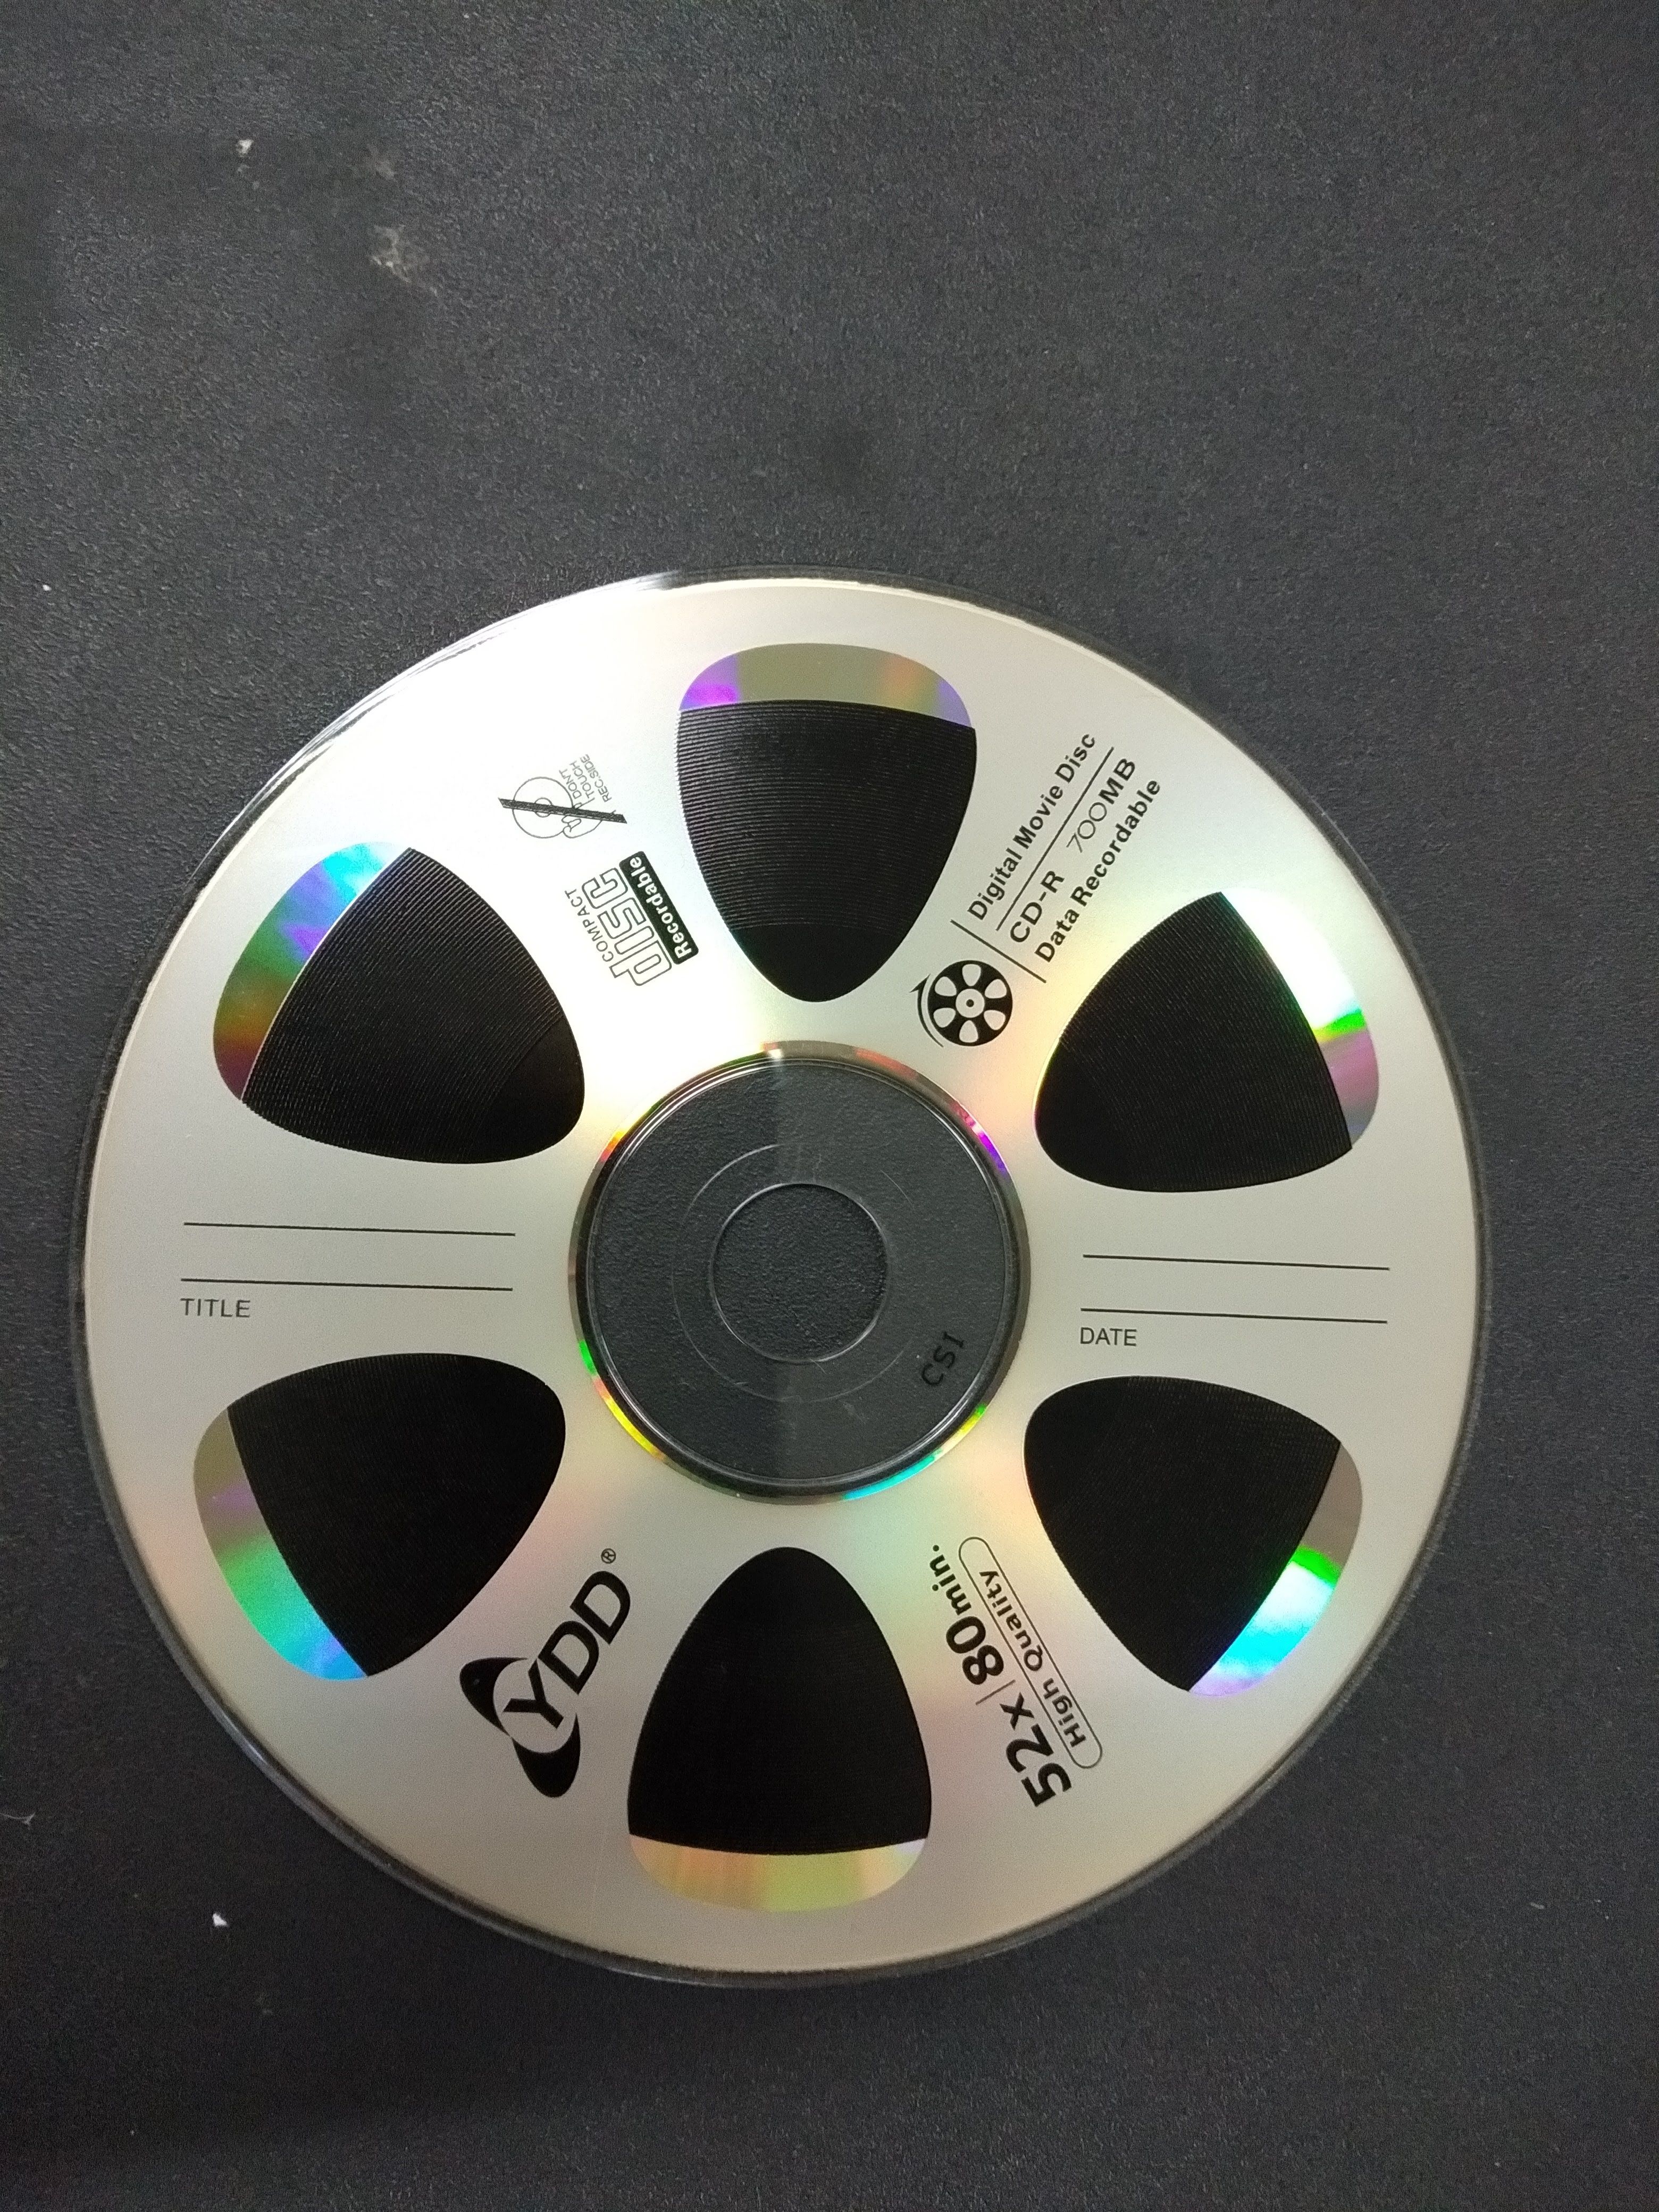 A standard CD